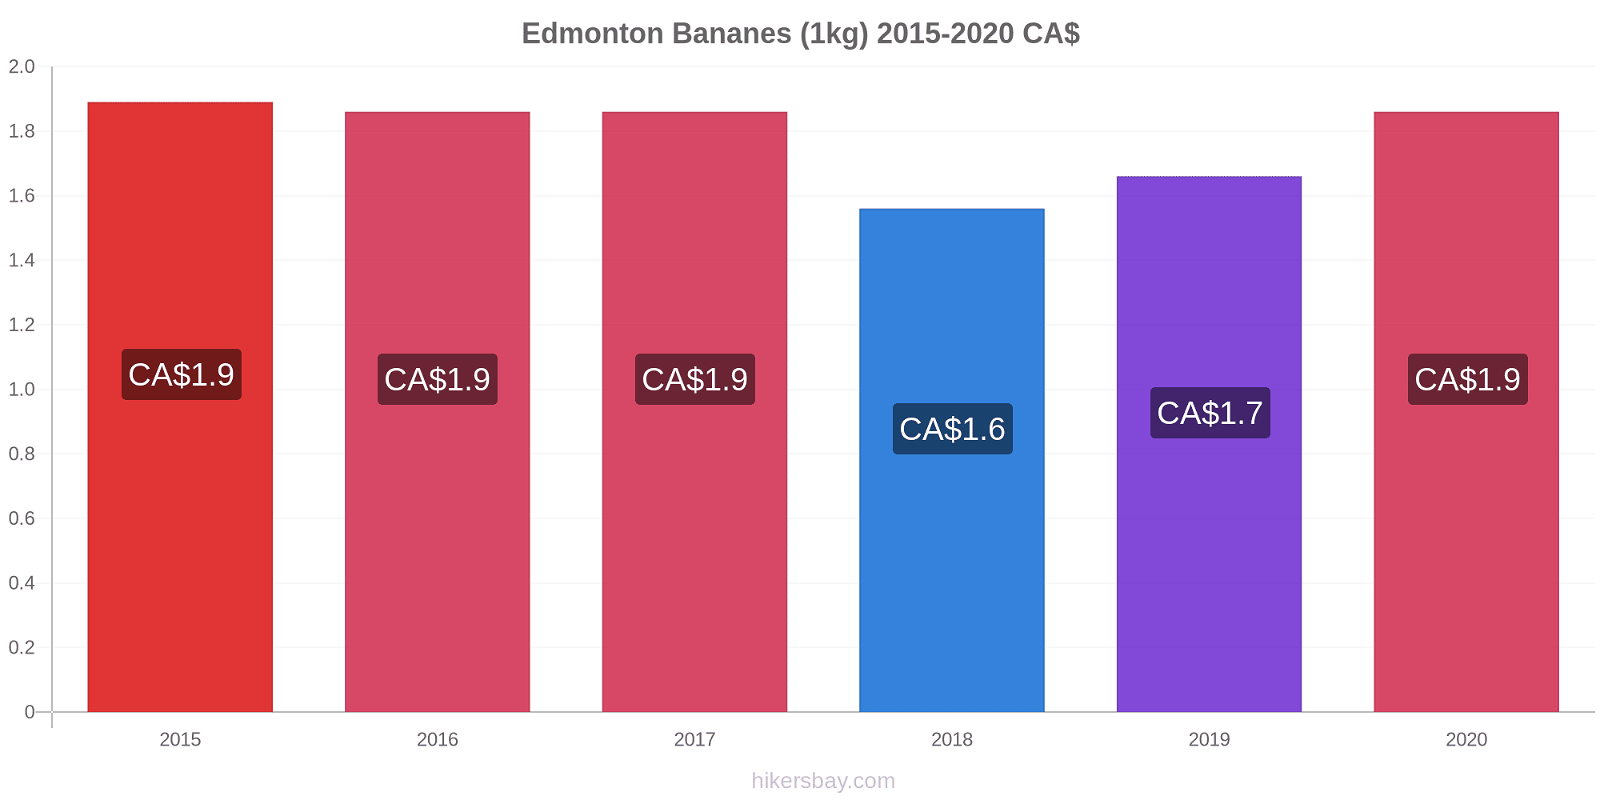 Edmonton changements de prix Bananes (1kg) hikersbay.com